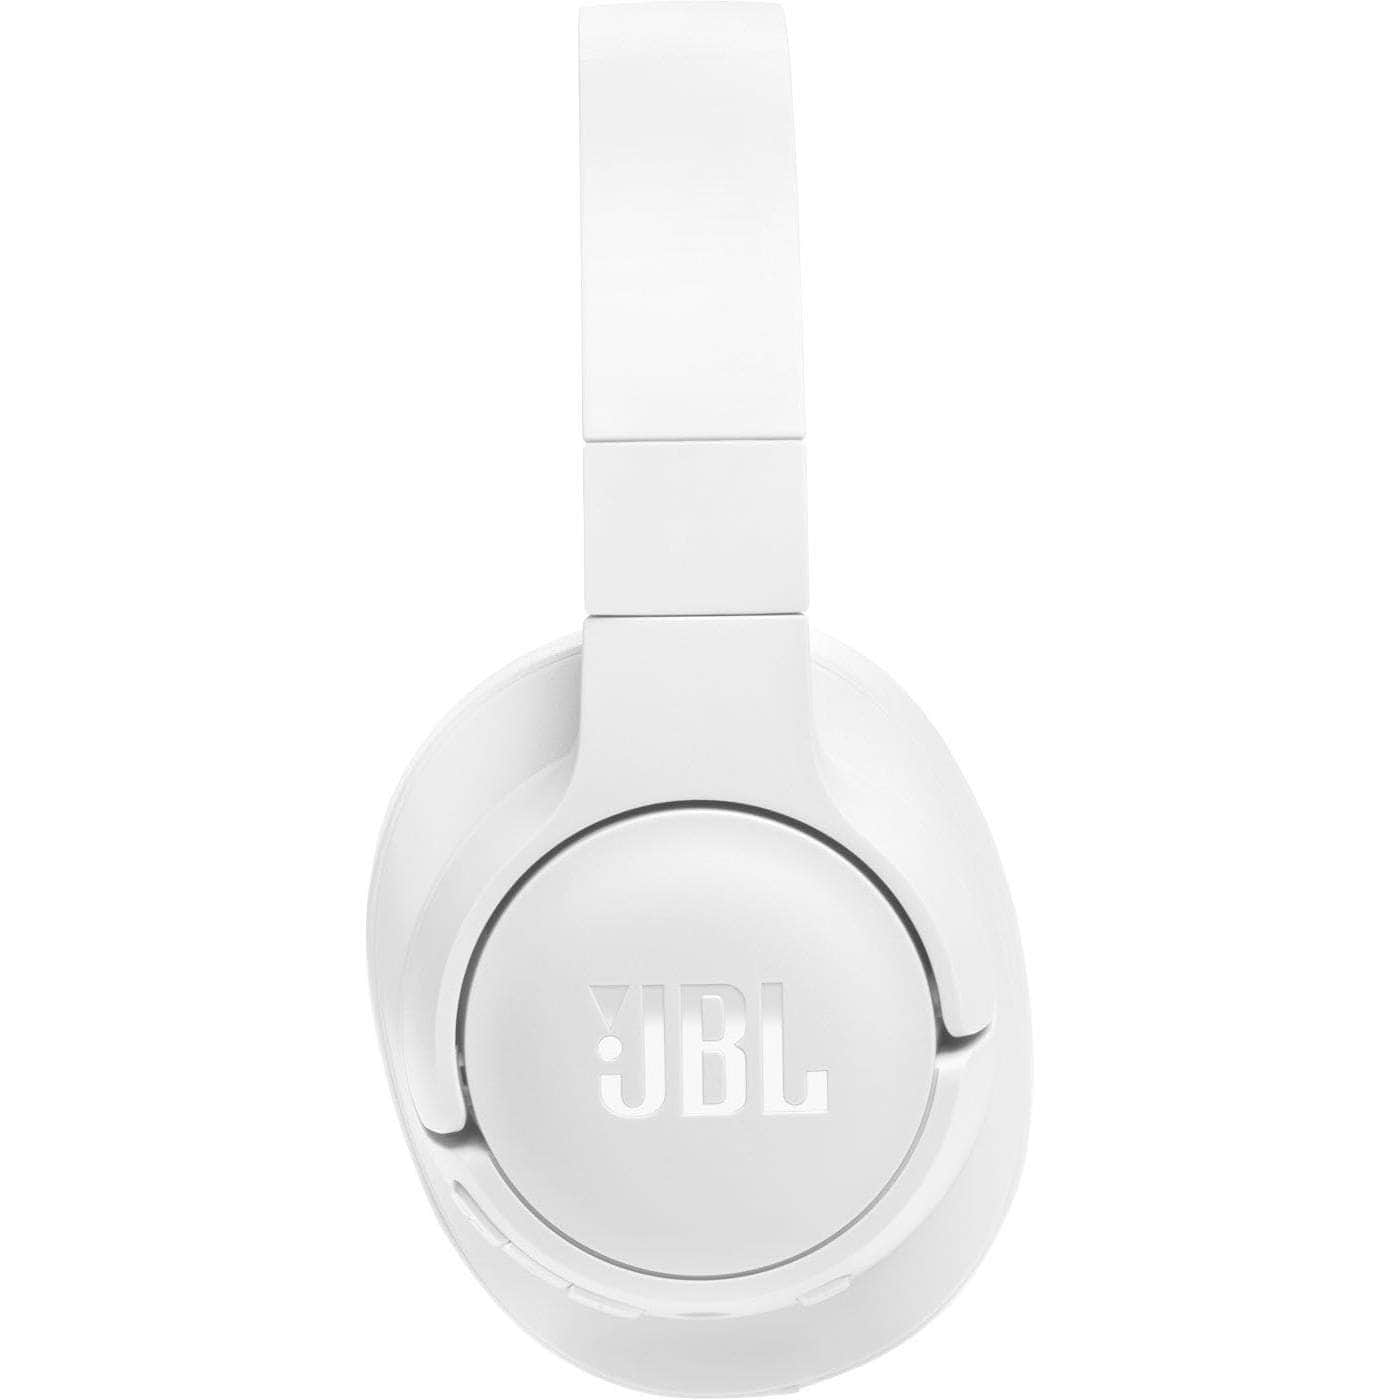 JBL Wireless Over-Ear Headphones Black/White